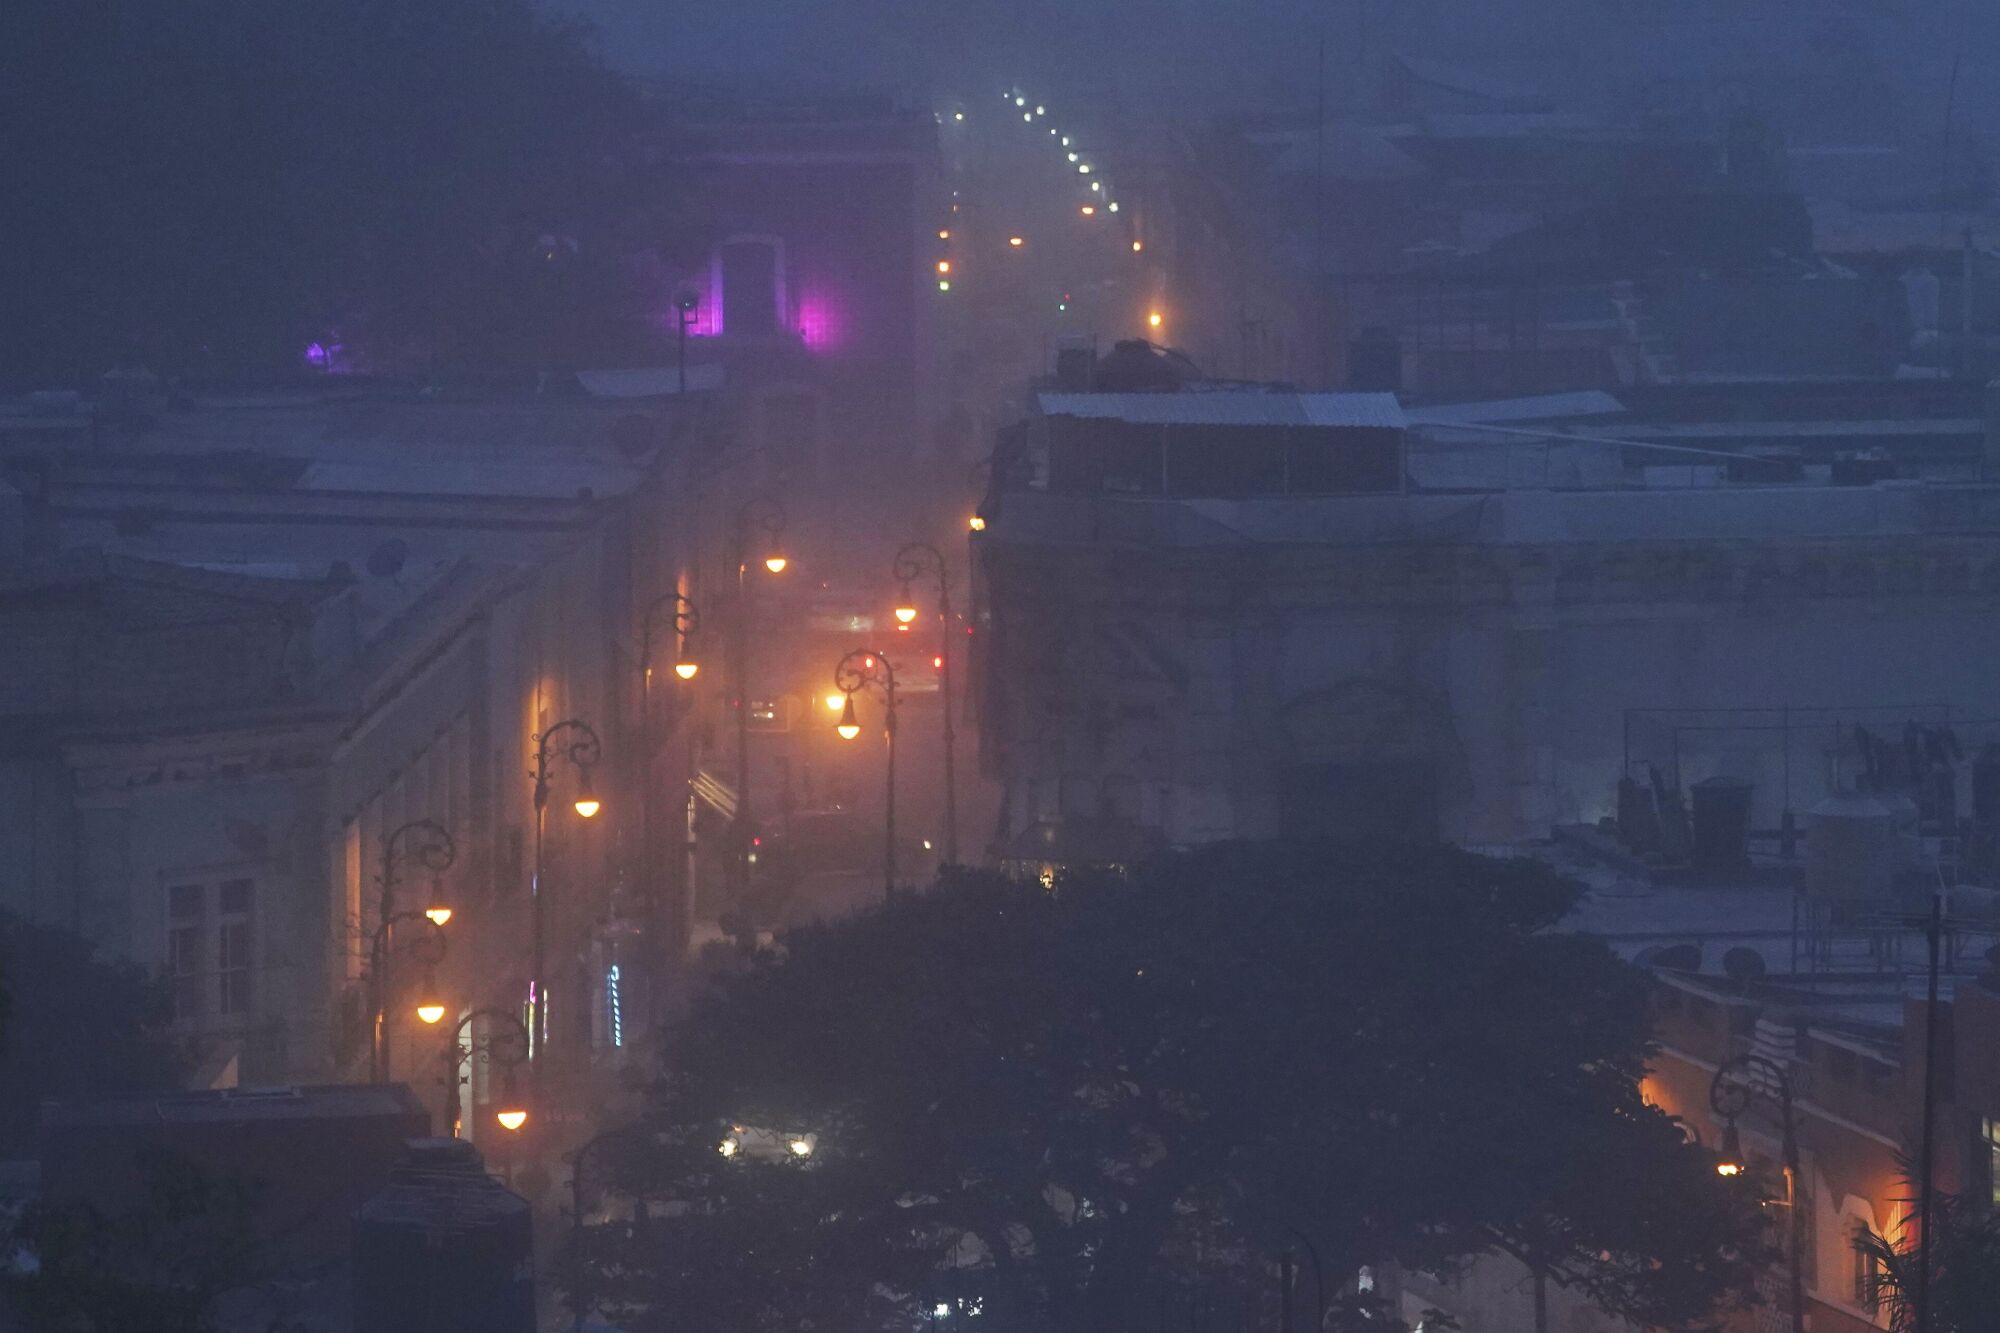 نمایی مه آلود از ساختمان های روشن 